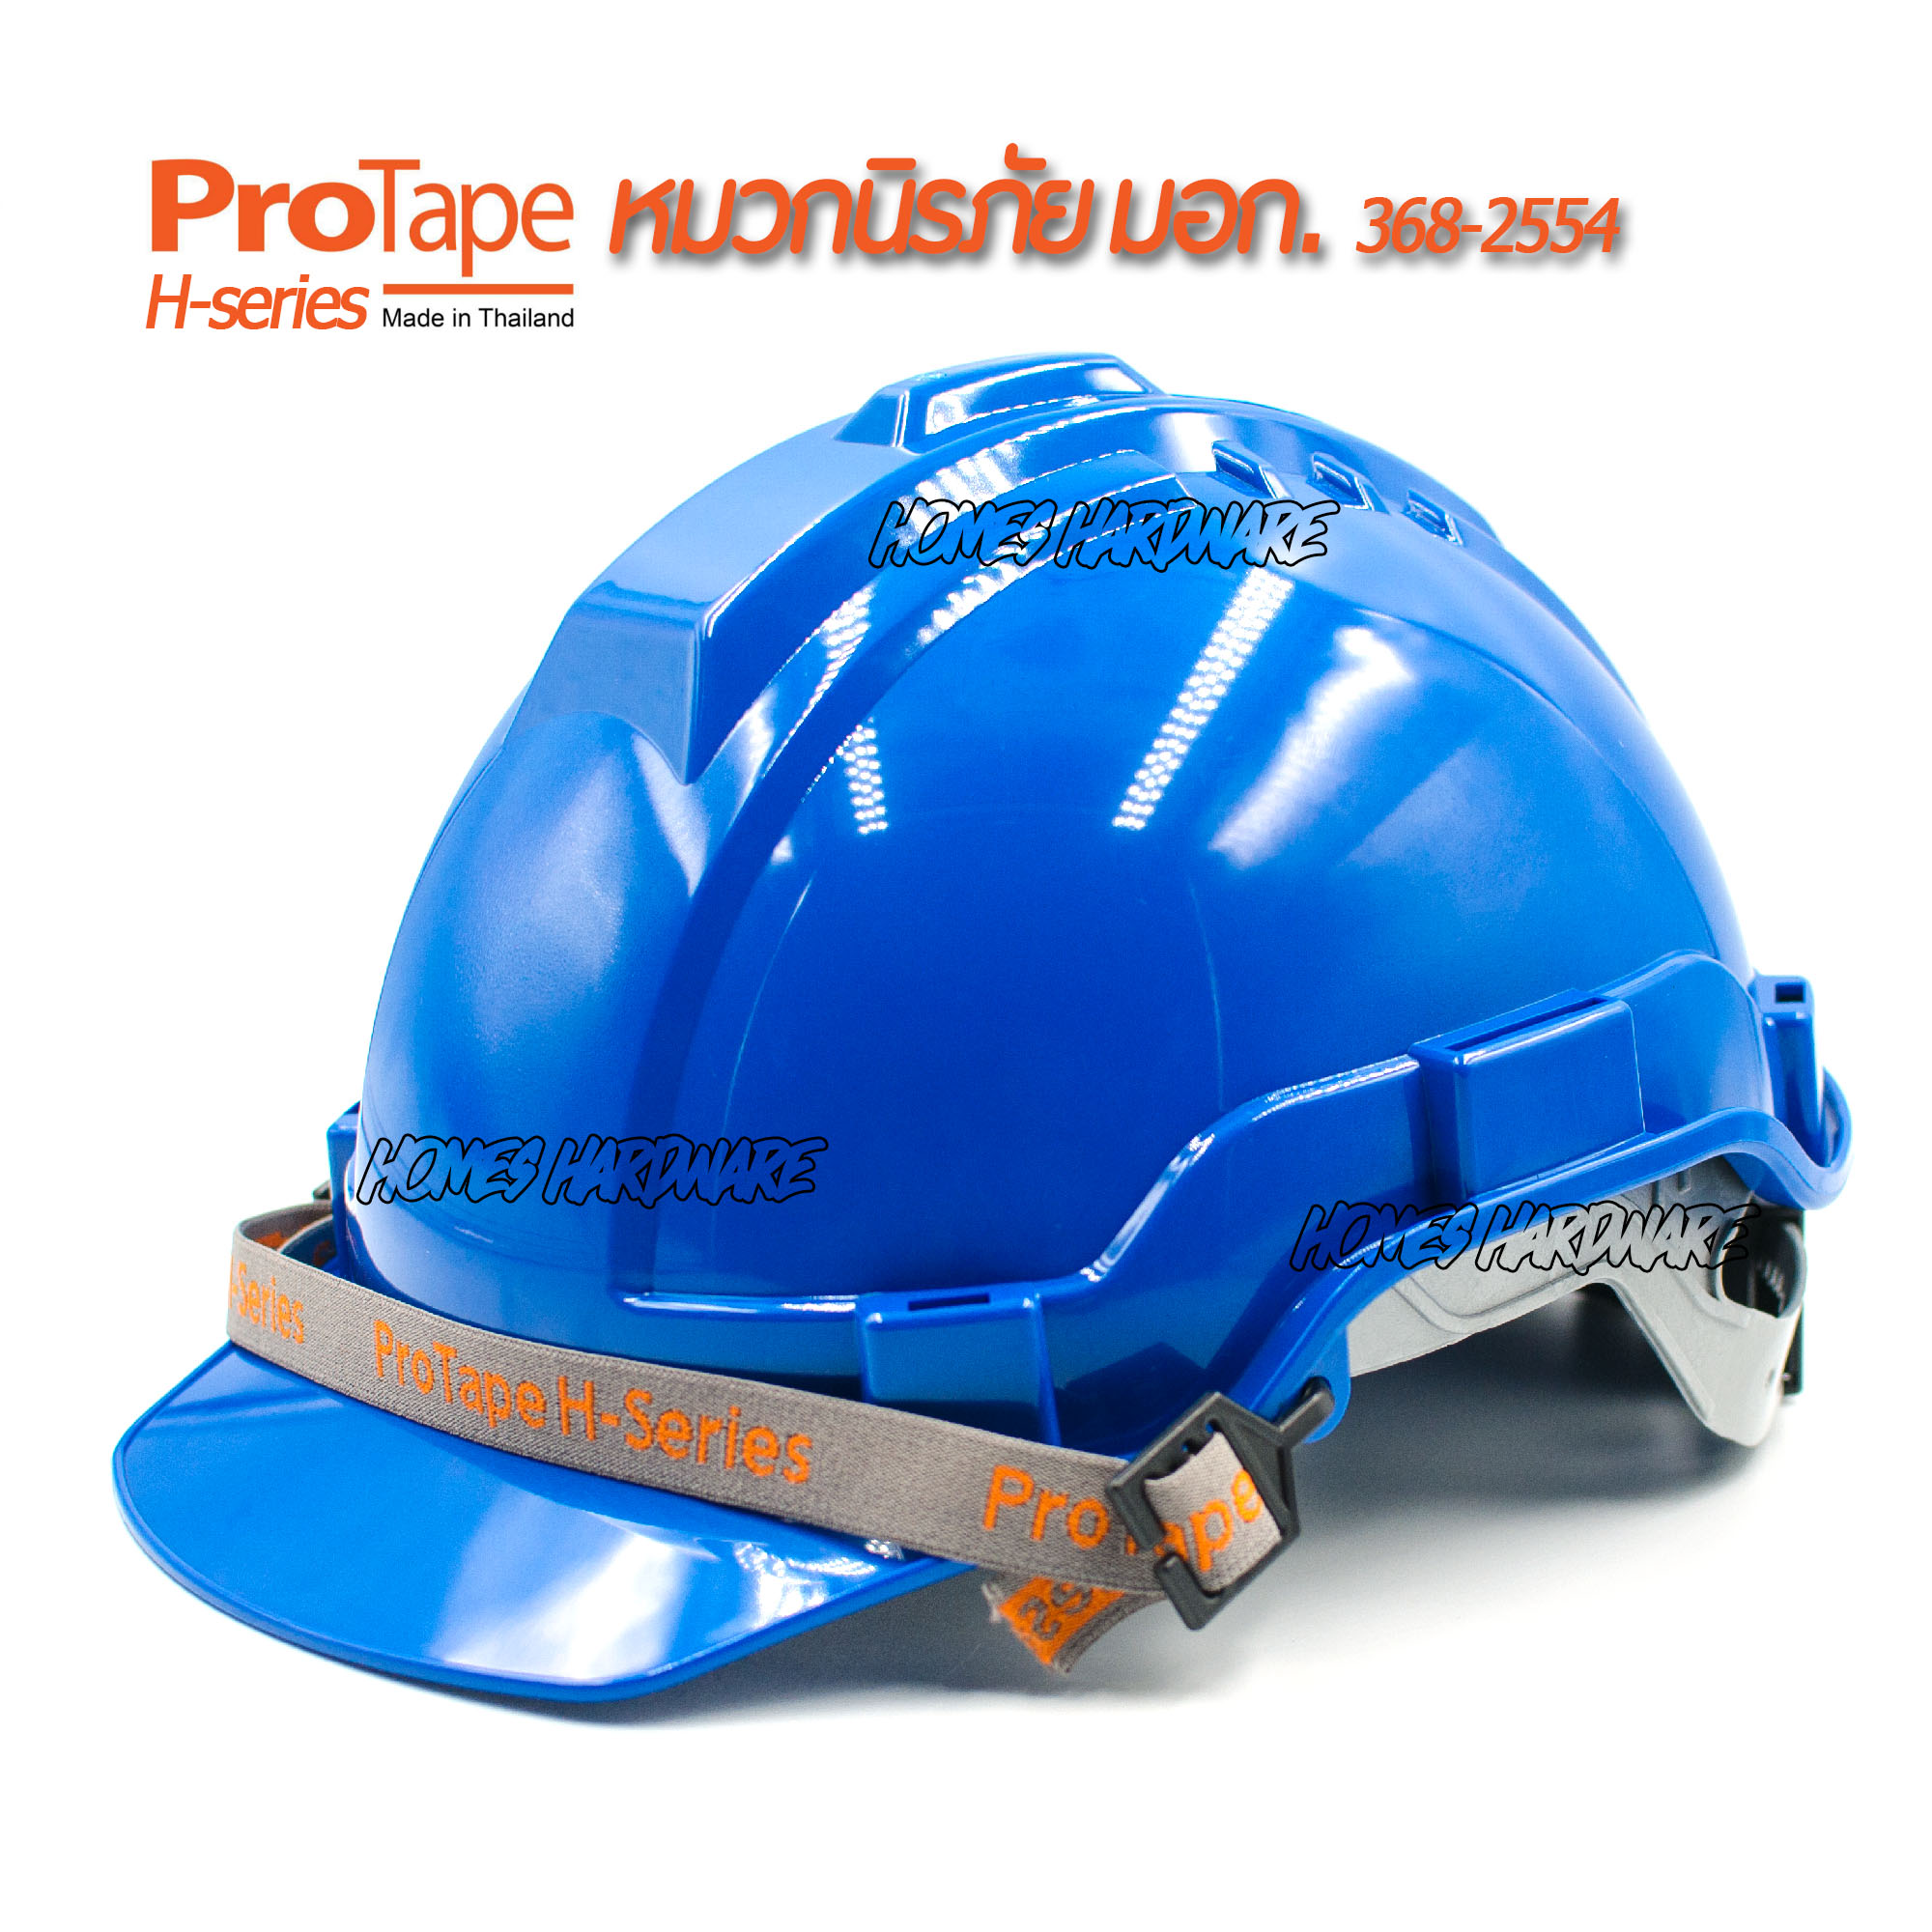 หมวกนิรภัย หมวกเซฟตี้ PROTAPE H-series สีน้ำเงิน ป้องกันแรงกระแทกสูง ผ่านการรับรองมาตรฐานความปลอยภัย มอก.368-2554 หมวกป้องกันศรีษะ